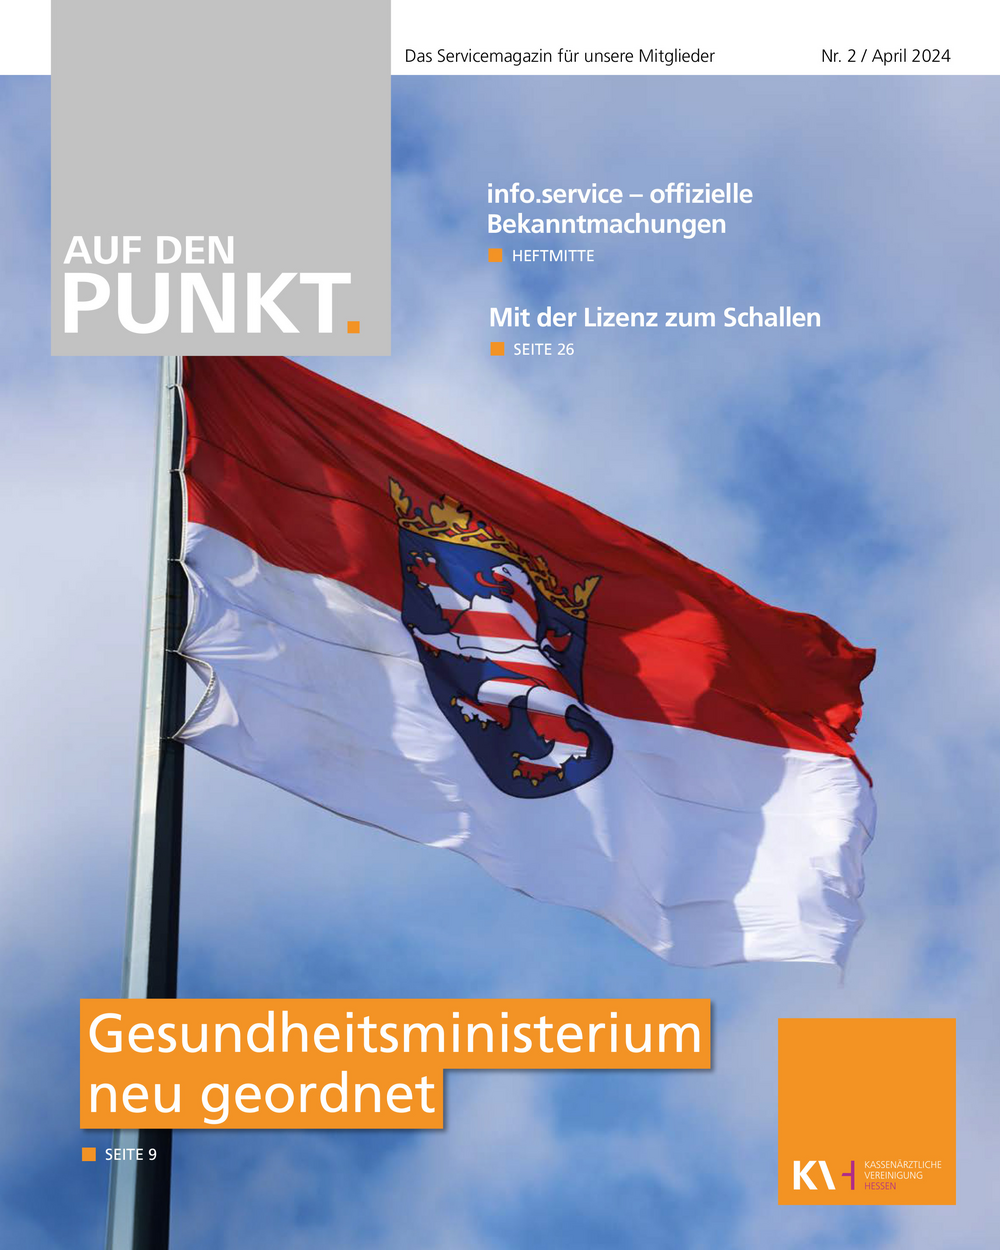 Titelseite der neuesten Ausgabe des Mitgliedermagazins der KVH Auf den PUNKT. 2/2024. Hessische Fahne vor blauem Himmel.